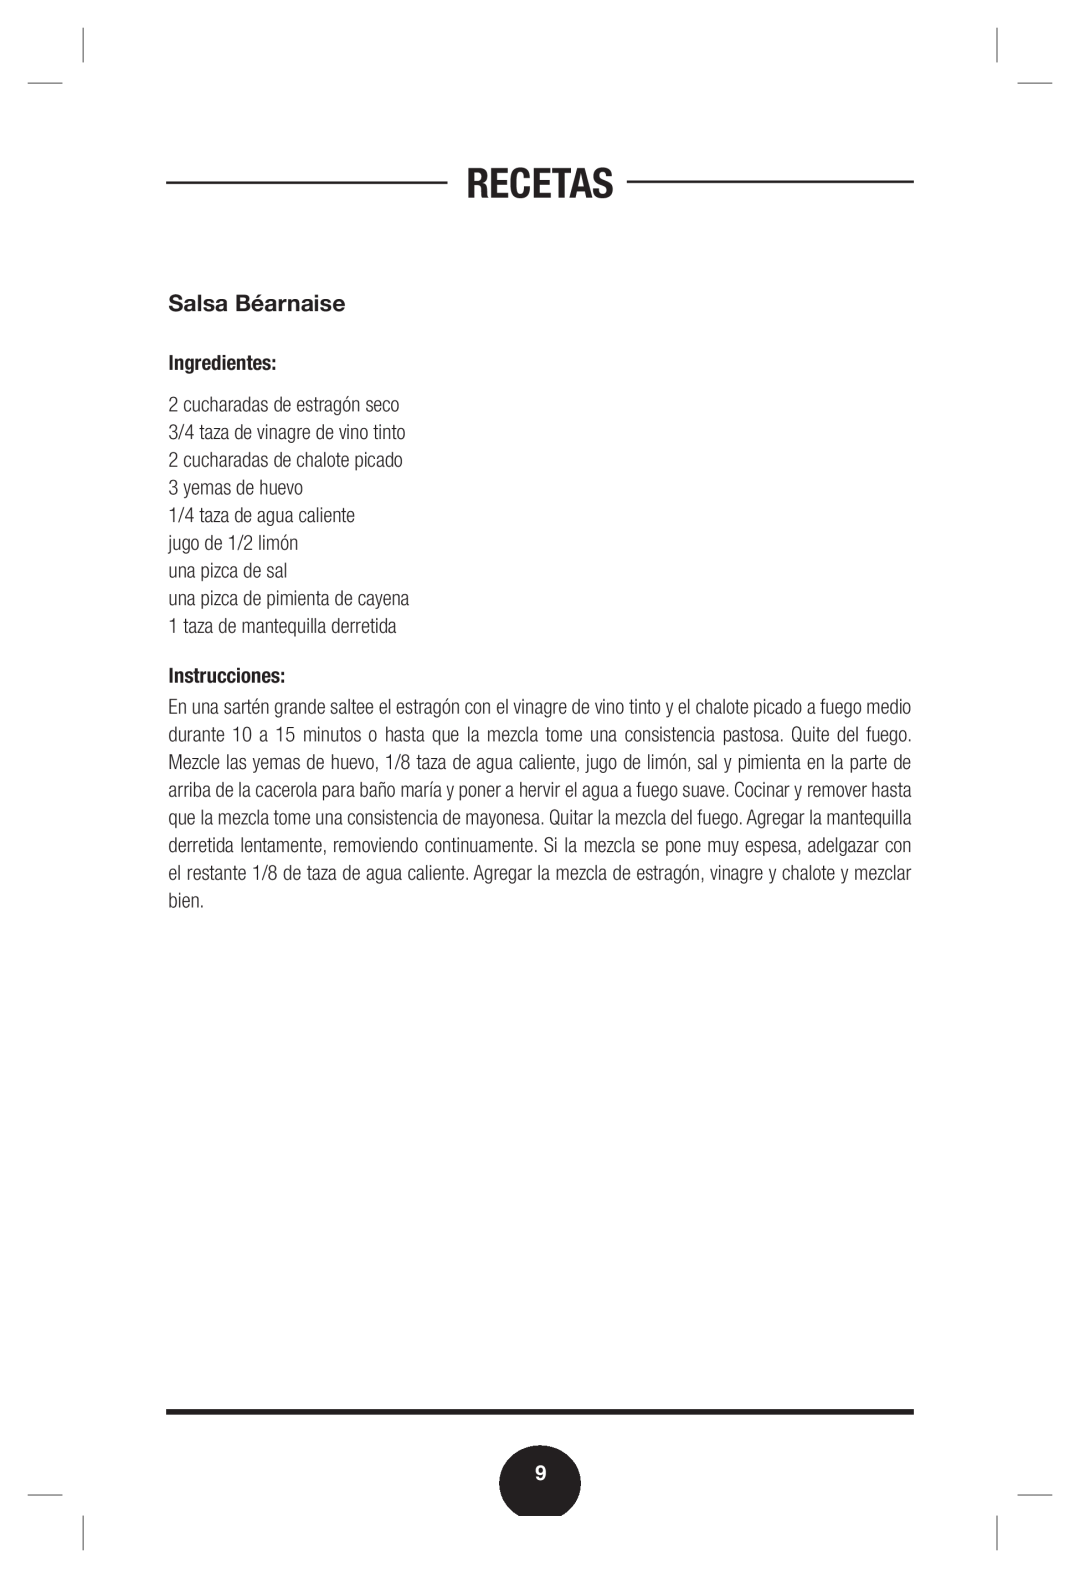 Fagor America Double Boiler manual Salsa Béarnaise, Recetas, Ingredientes, una pizca de sal, Instrucciones 